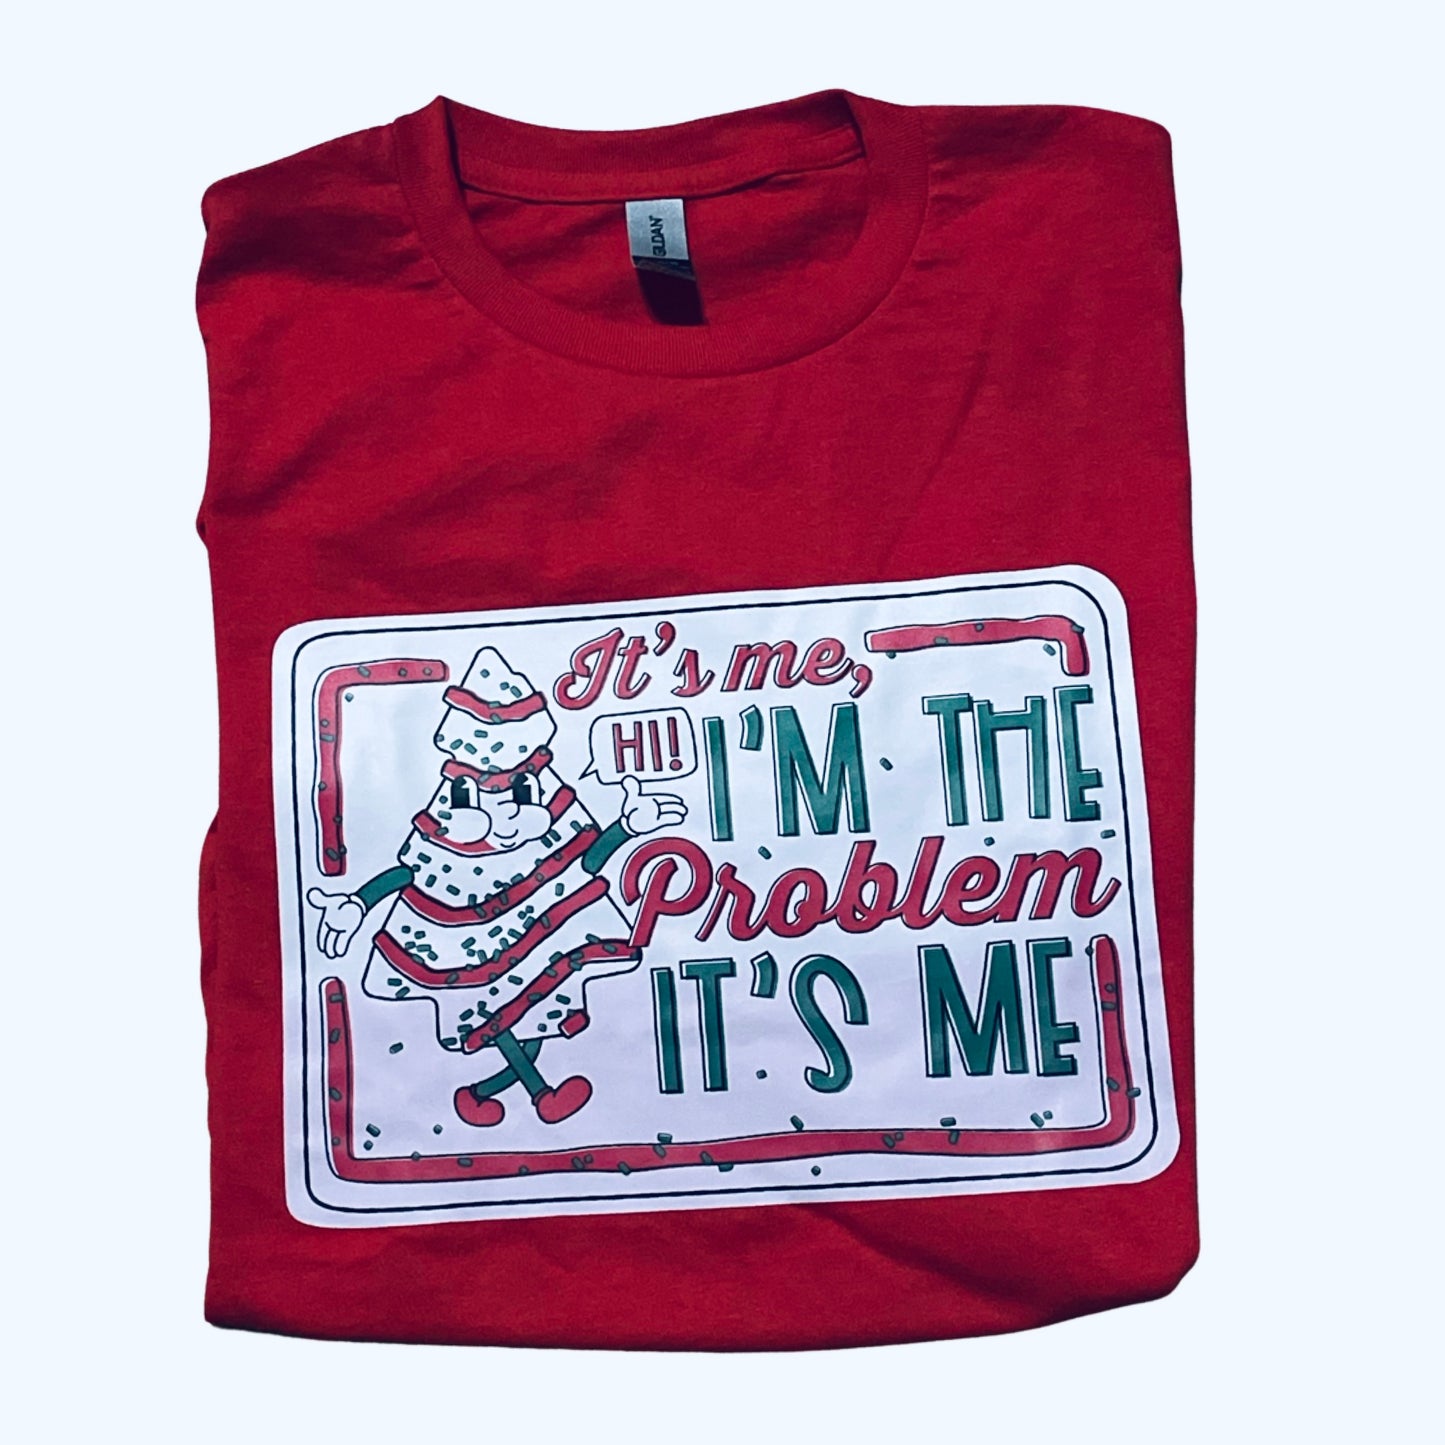 It’s me Christmas shirt